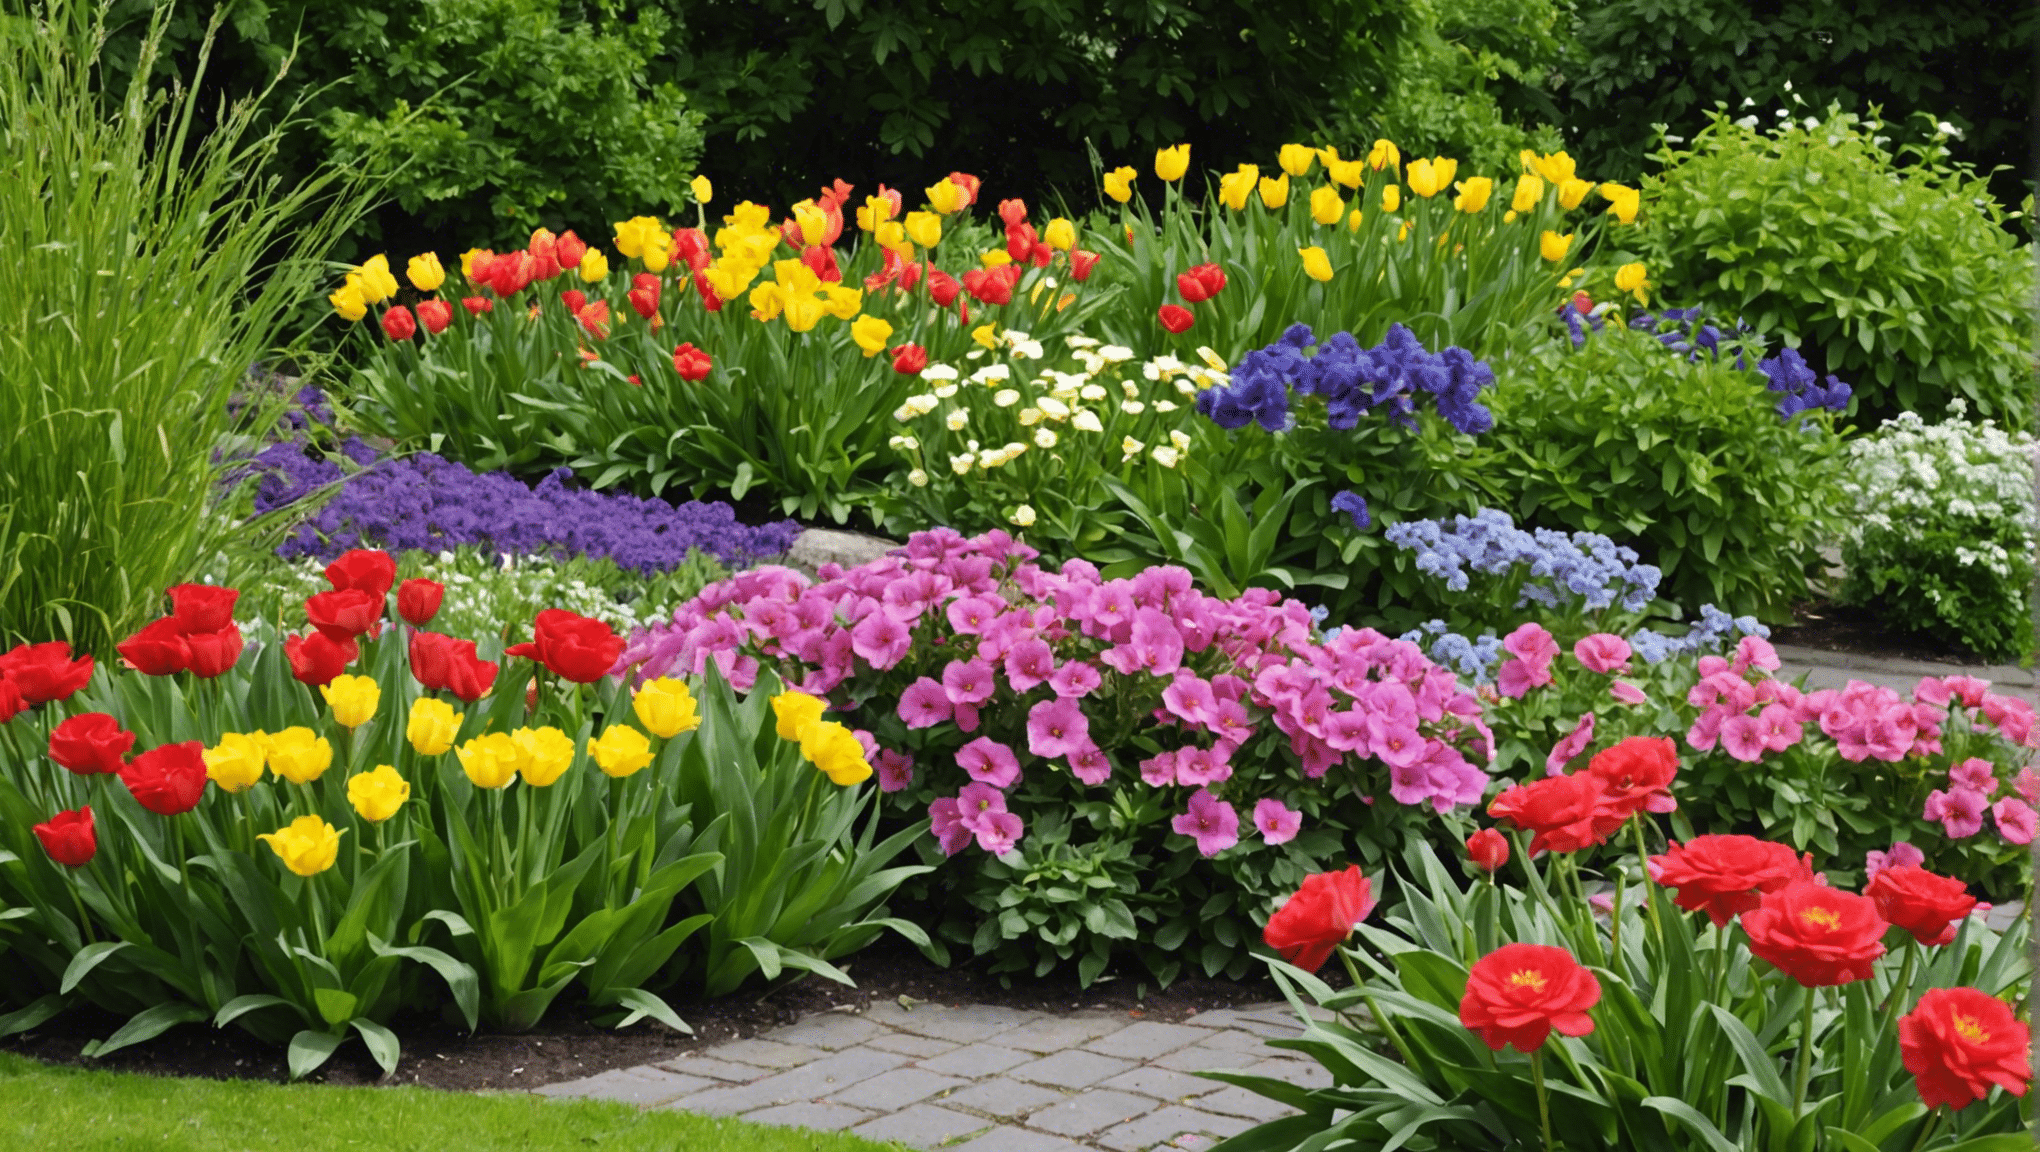 découvrez des conseils pour choisir les meilleures plantes afin de fleurir votre jardin ce printemps. profitez d'une explosion de couleurs avec nos suggestions de plantes adaptées à la saison.